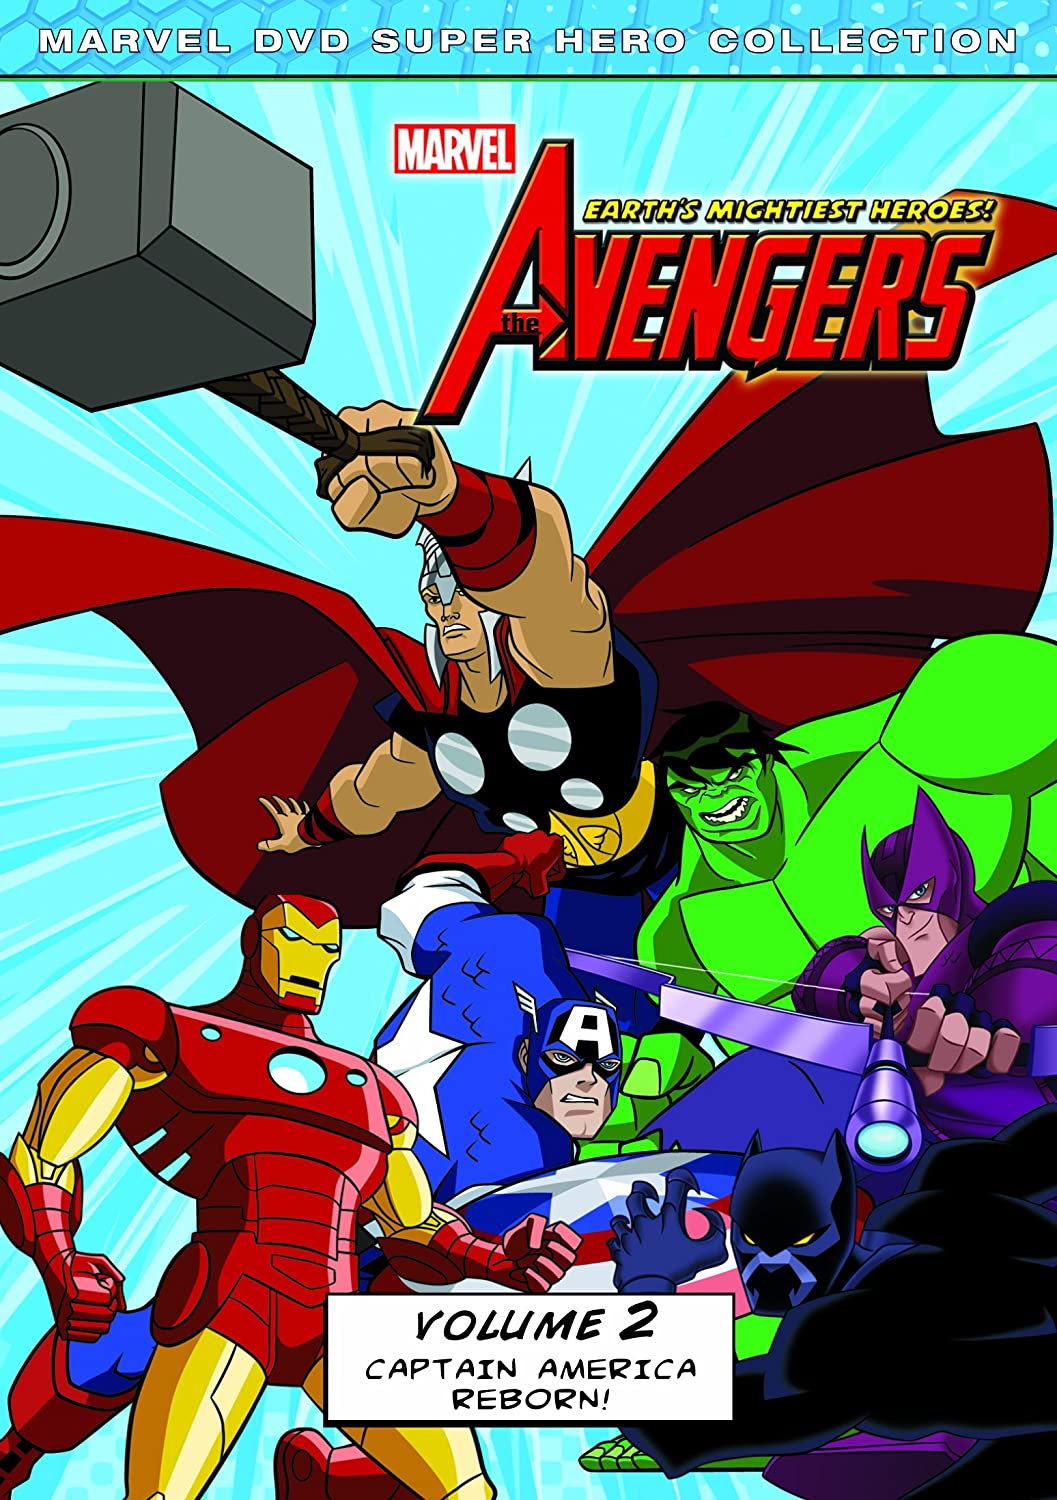 Avengers: Earth's Mightiest Heroes Volume 2